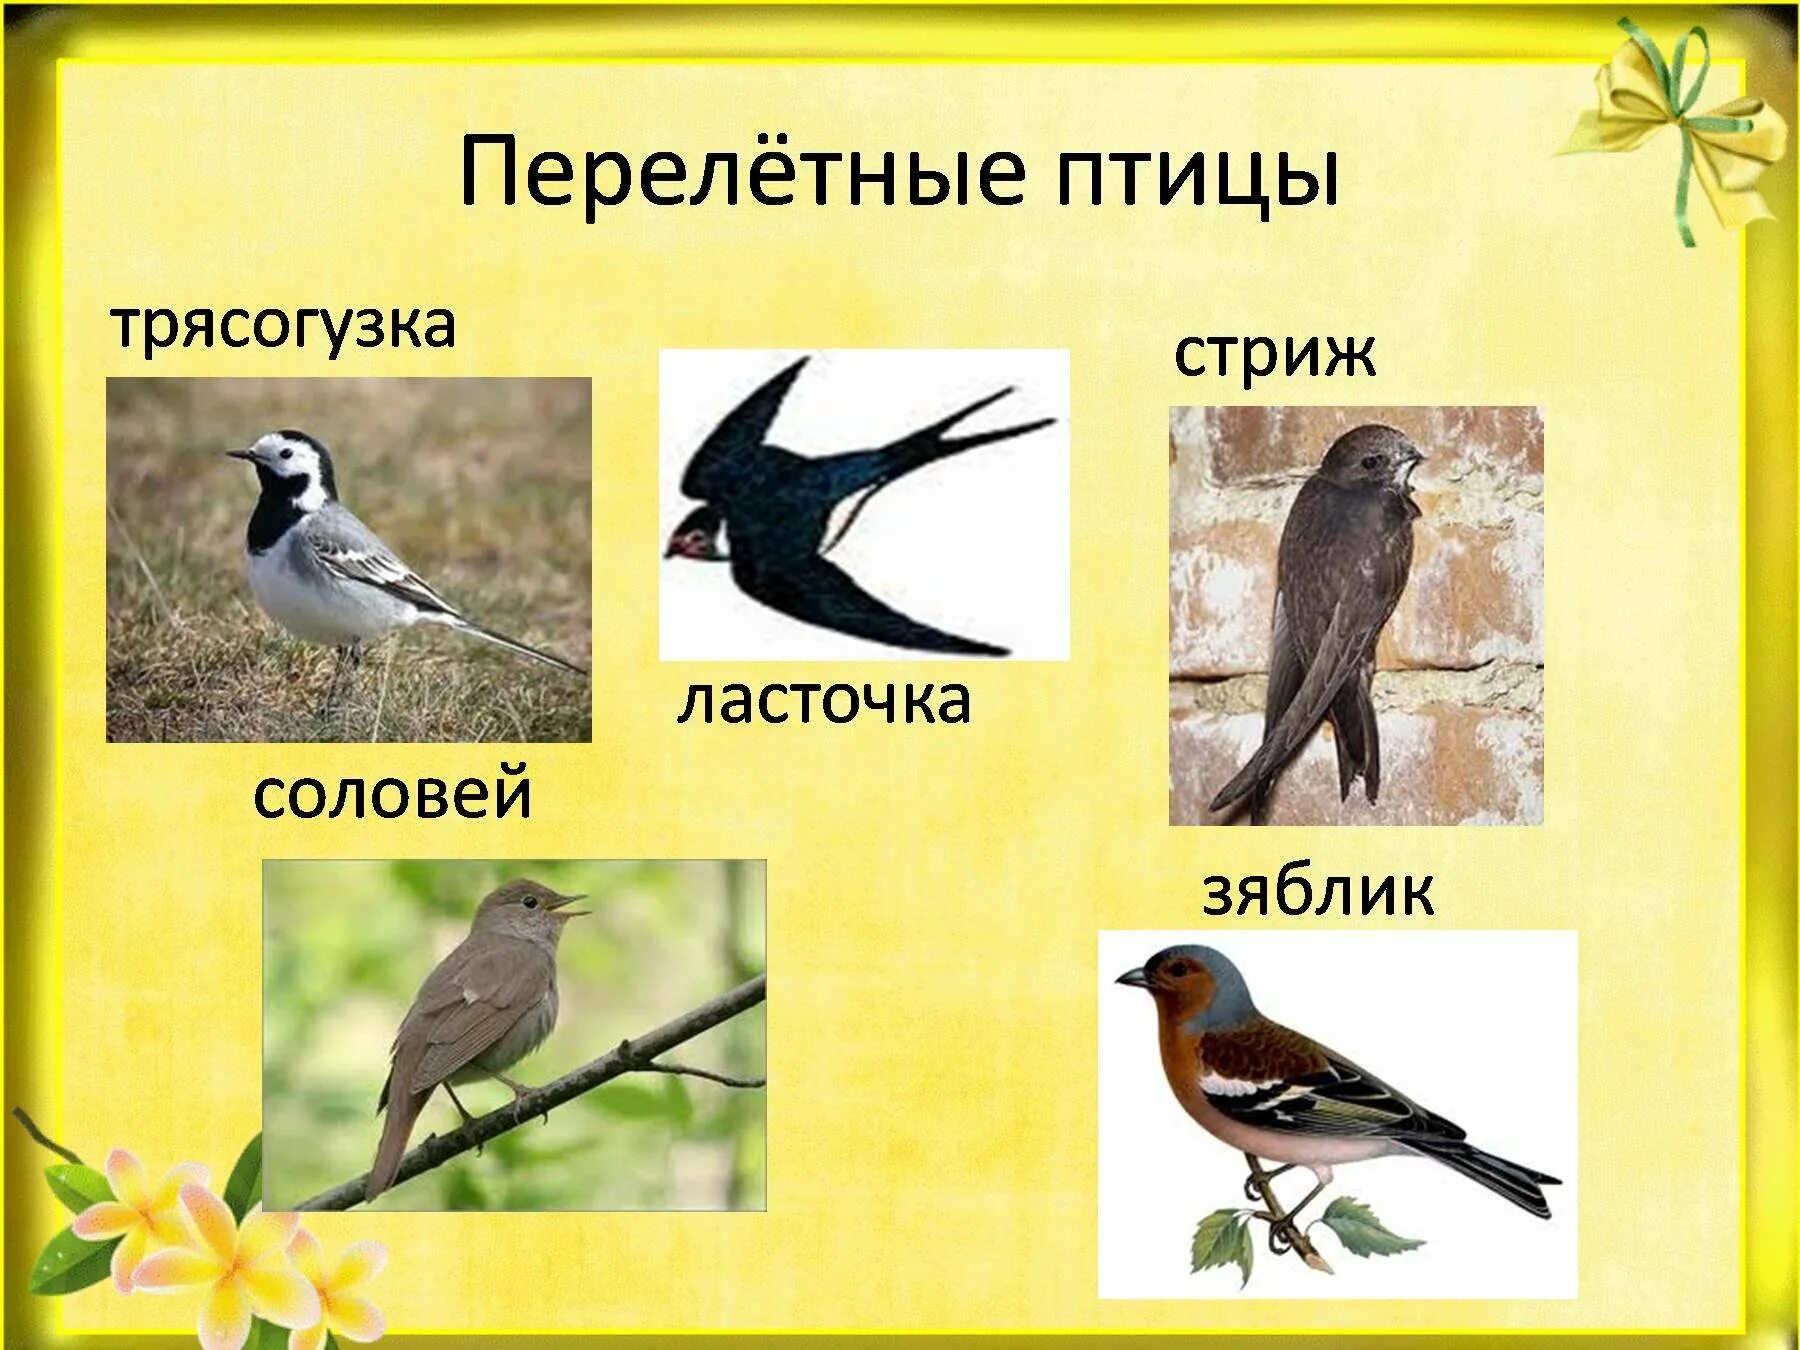 Перелетные птицы. Перелетные птицы для дошкольников. Перелётные птицы картинки. Перелётные птицы весной для дошкольников.